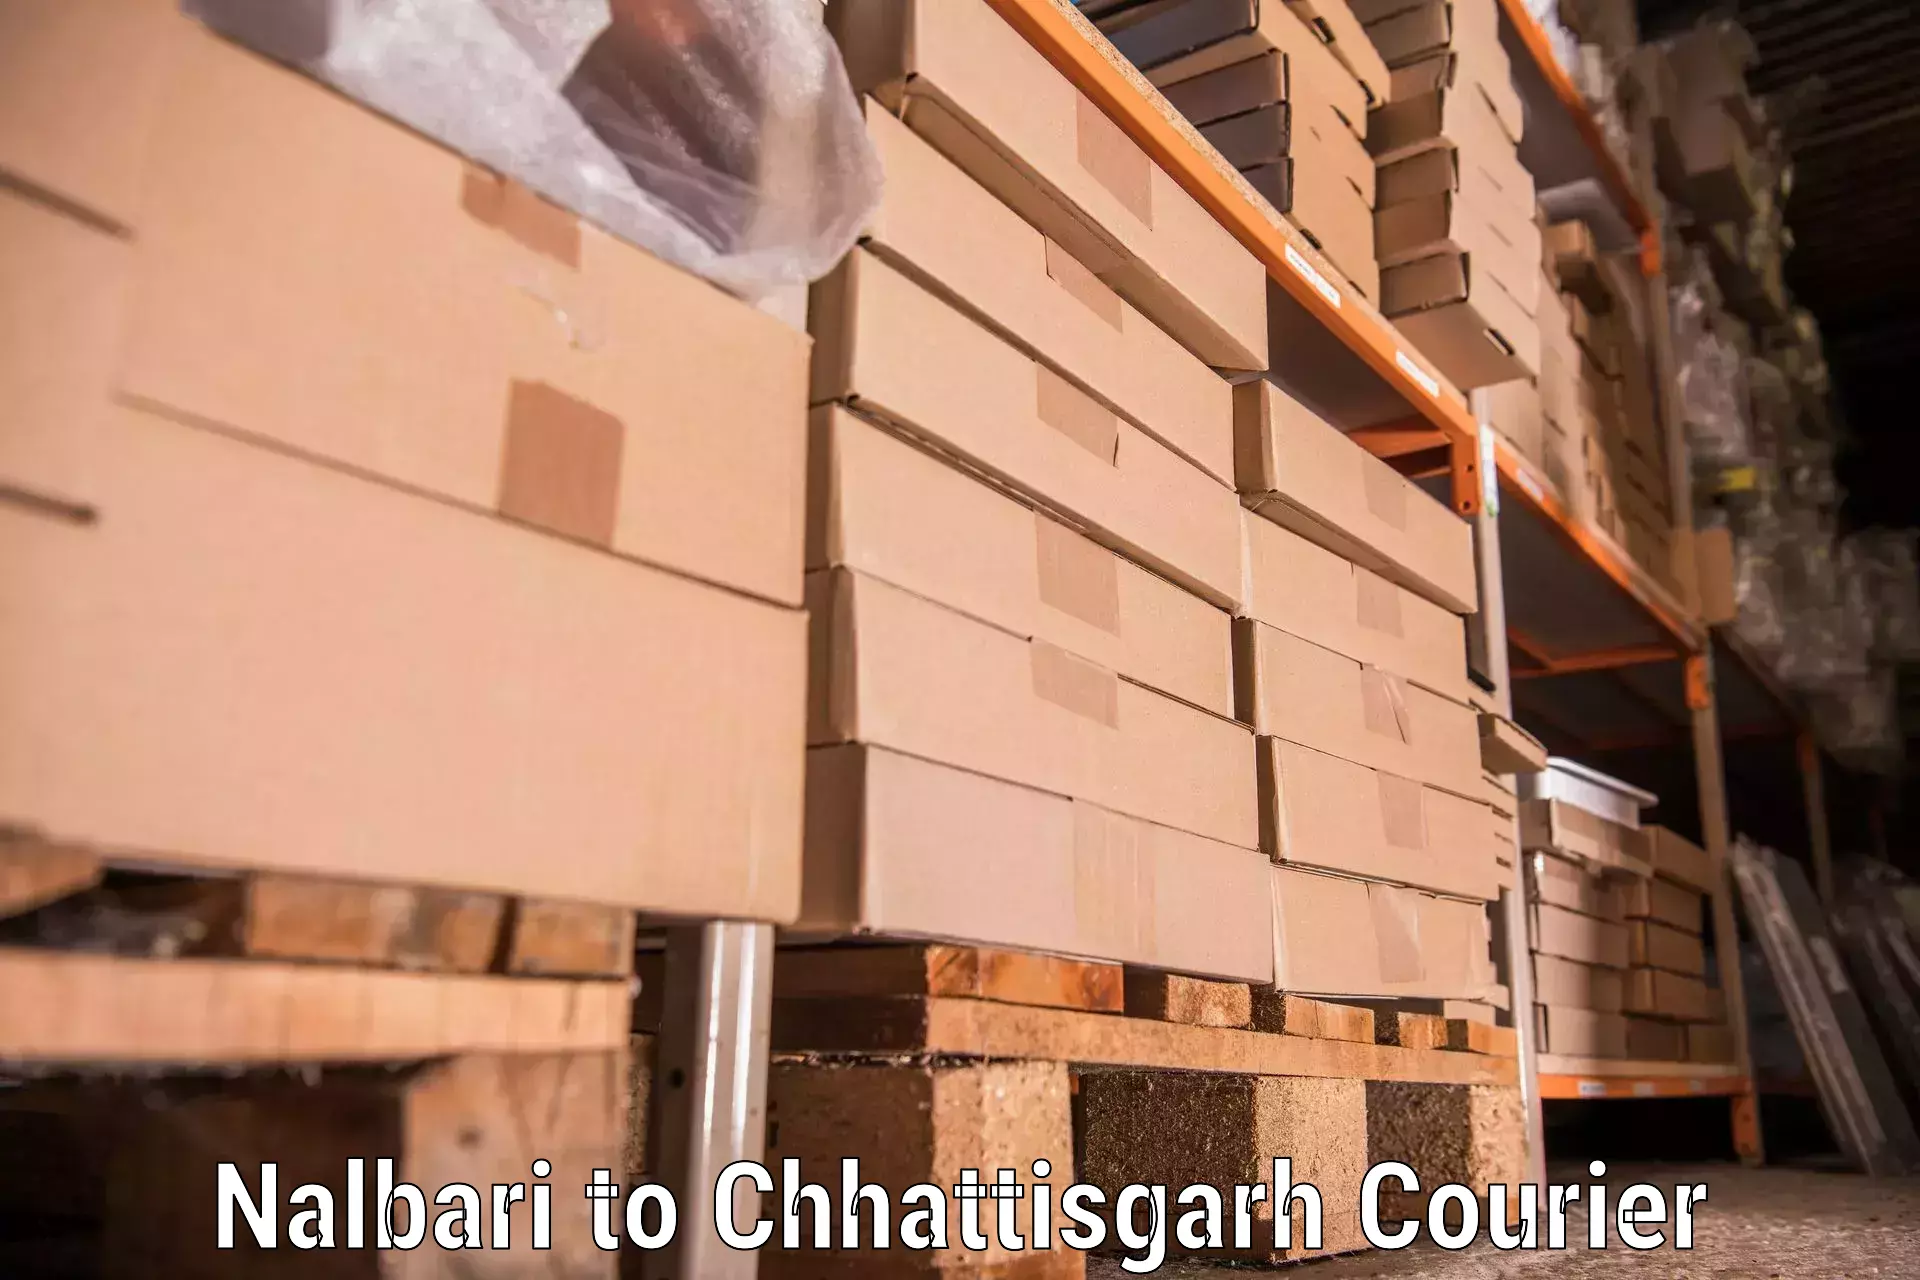 Home relocation services Nalbari to Raigarh Chhattisgarh